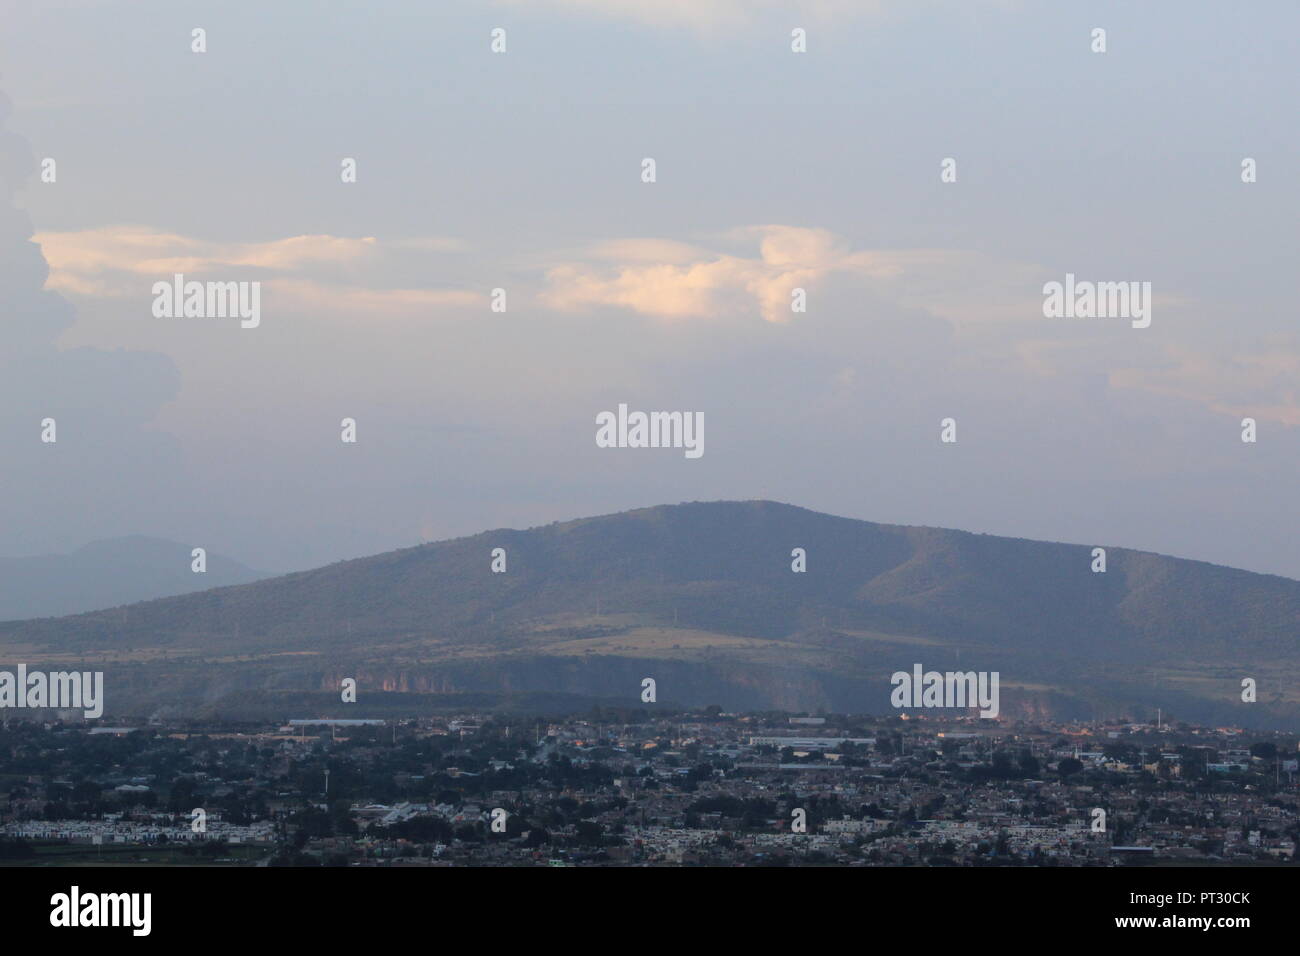 foto tomada en el cerro de la reina en el municipio de Tonala Jalisco Mexico en donde se aprecia una vista panoramica de la ciudad de Guadalajara Jal Stock Photo